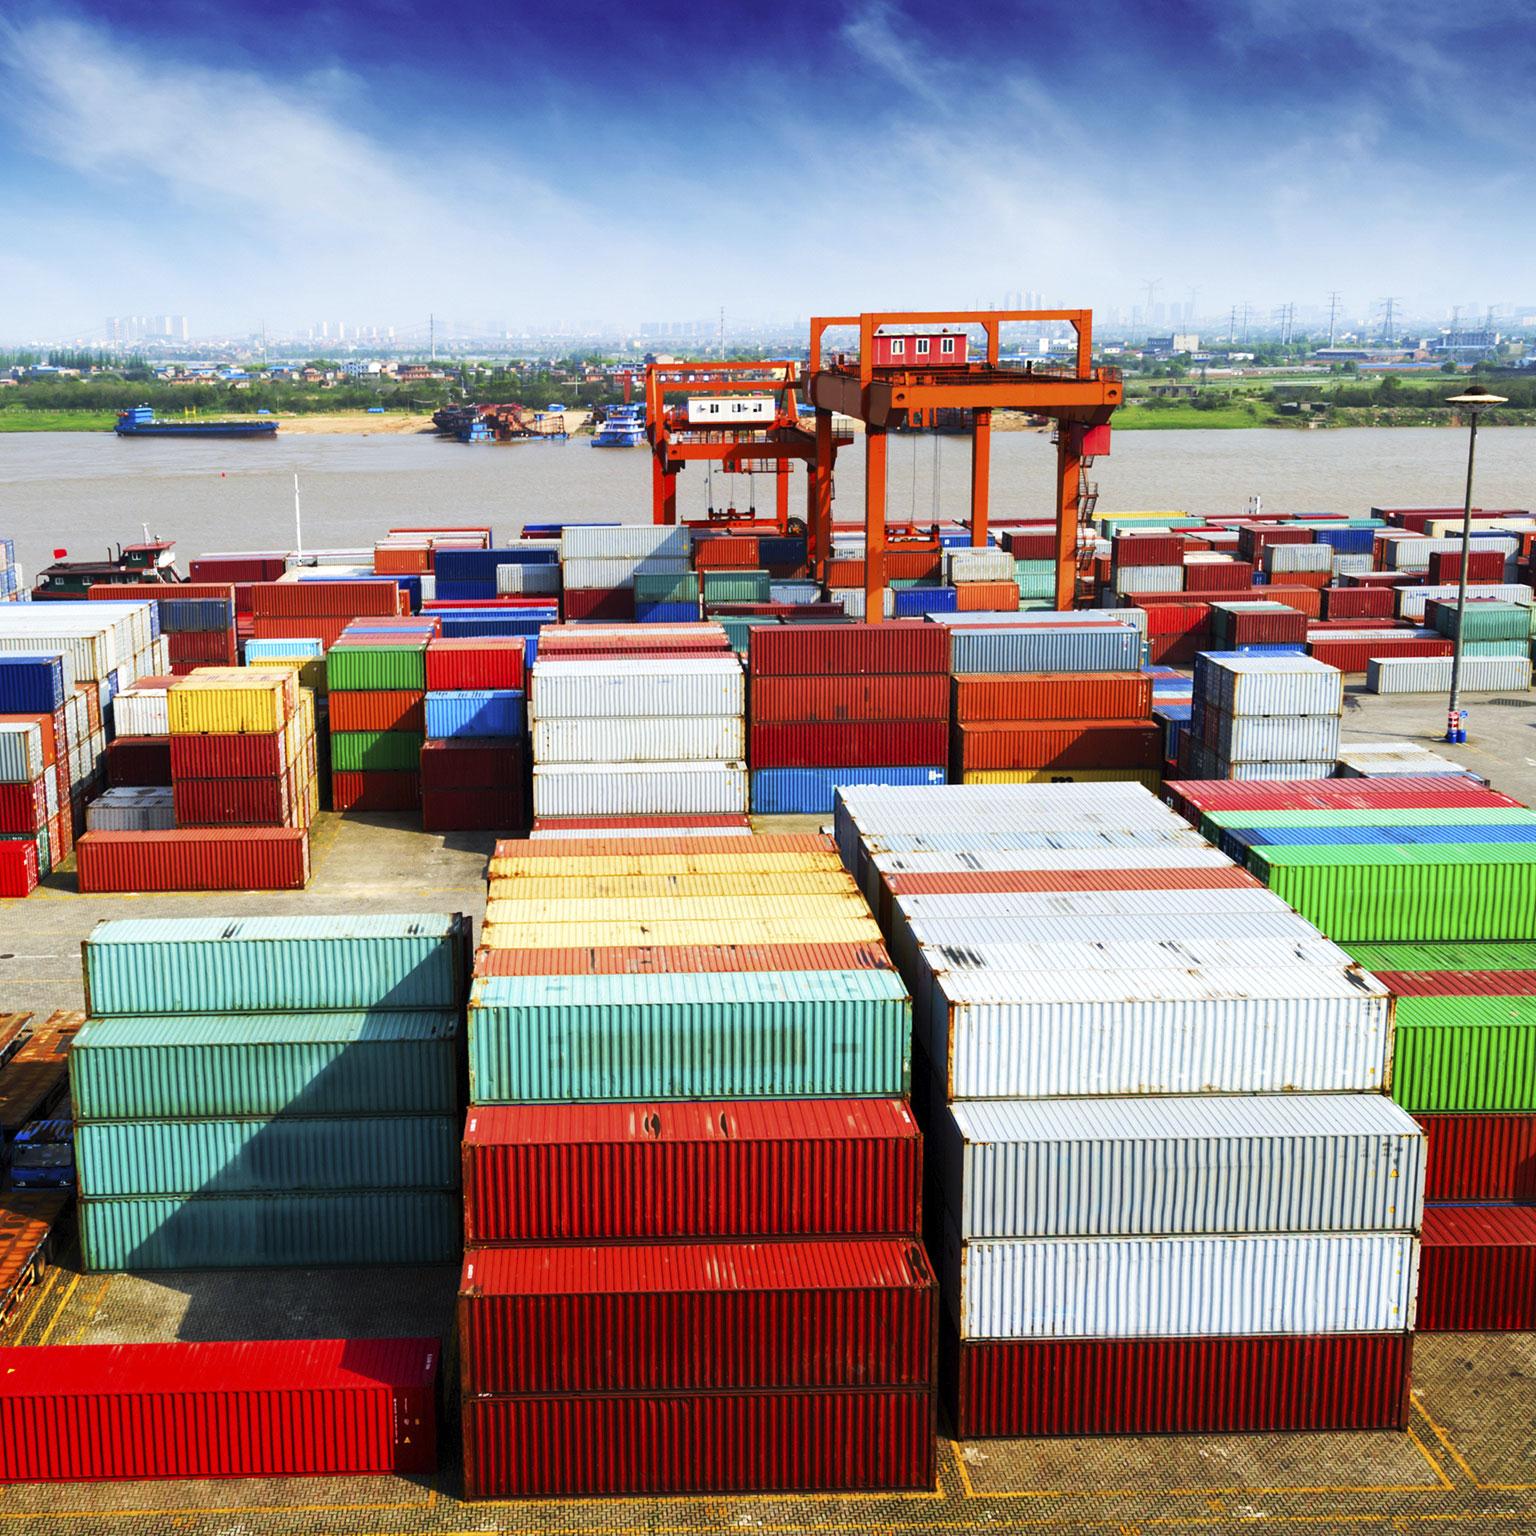 长滩港刷新记录2021年货运量将超过900万标准箱